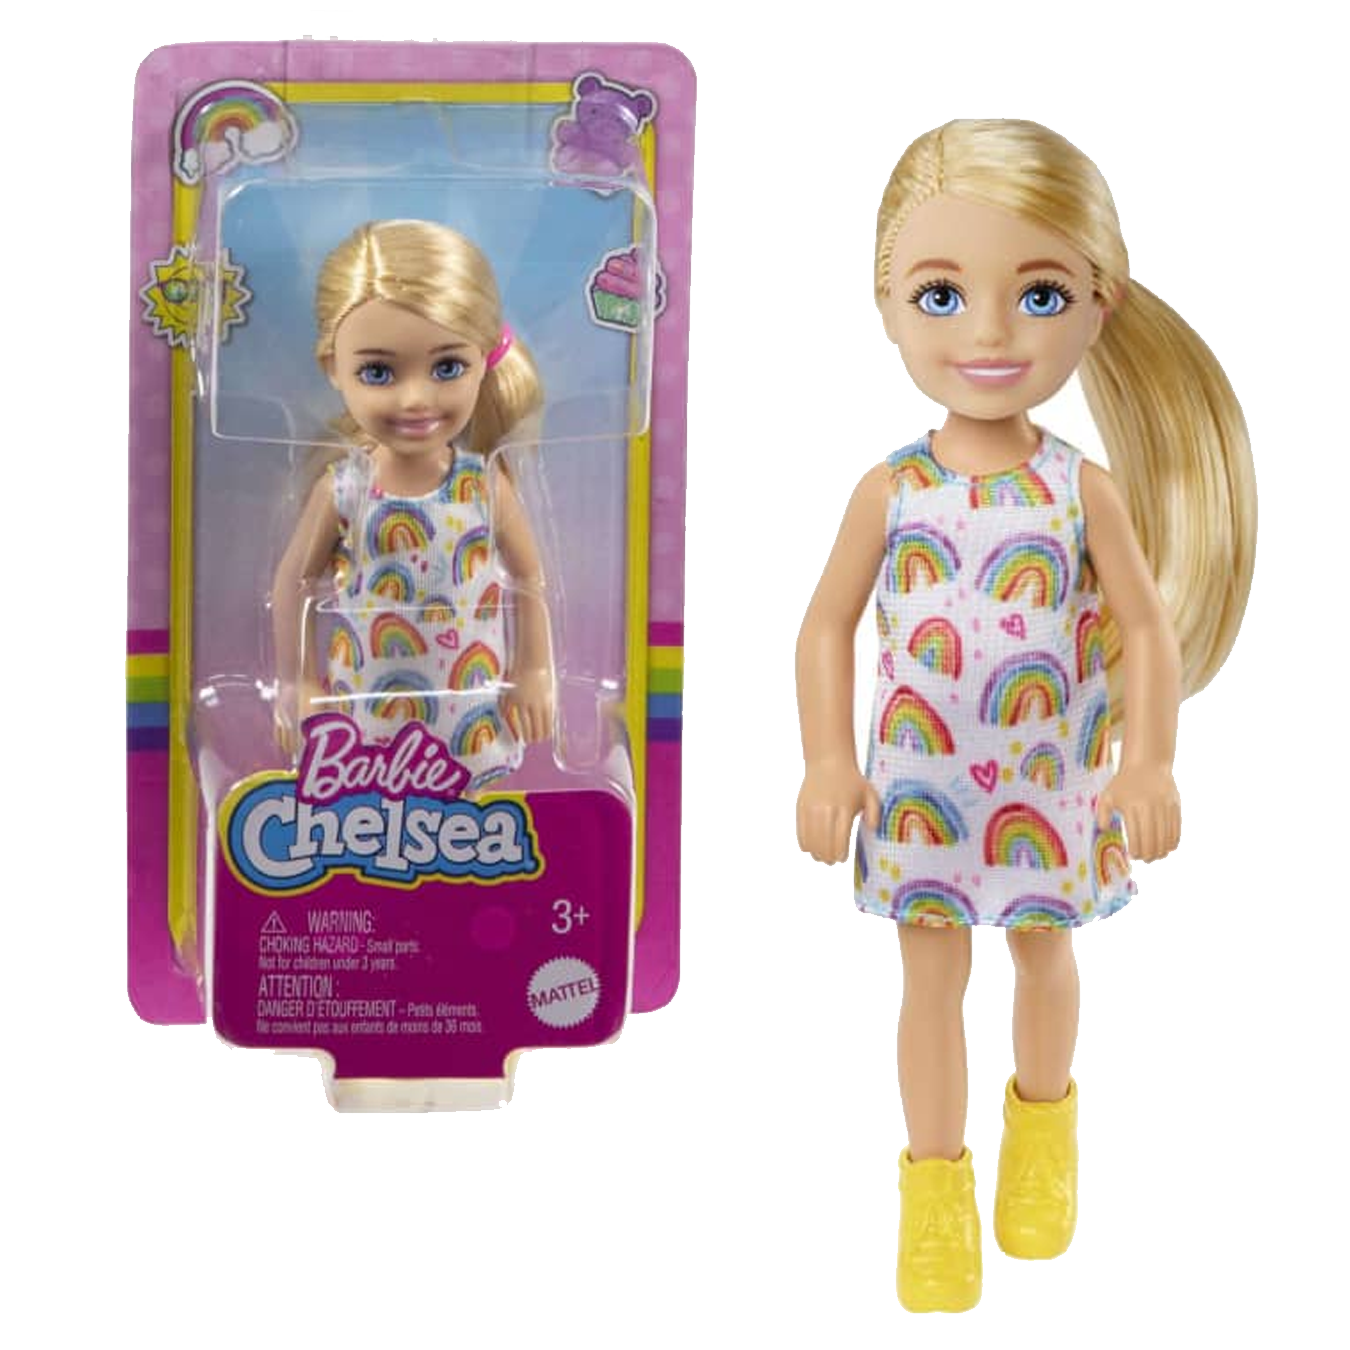 Boneca Barbie Malibu Estilista Cabelo e Maquiagem Mattel - Fátima Criança